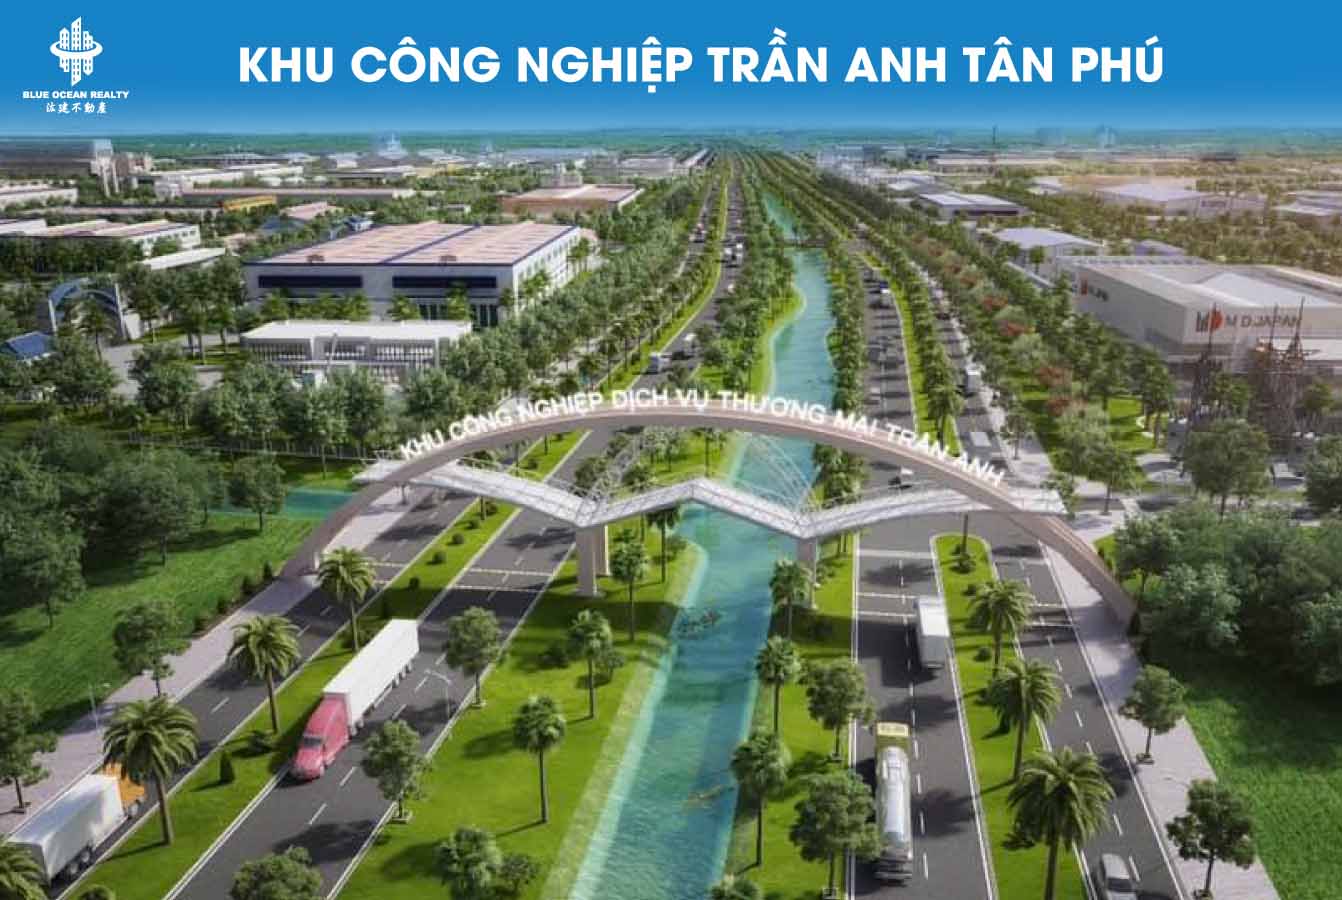 Khu công nghiệp Trần Anh Tân Phú - Long An